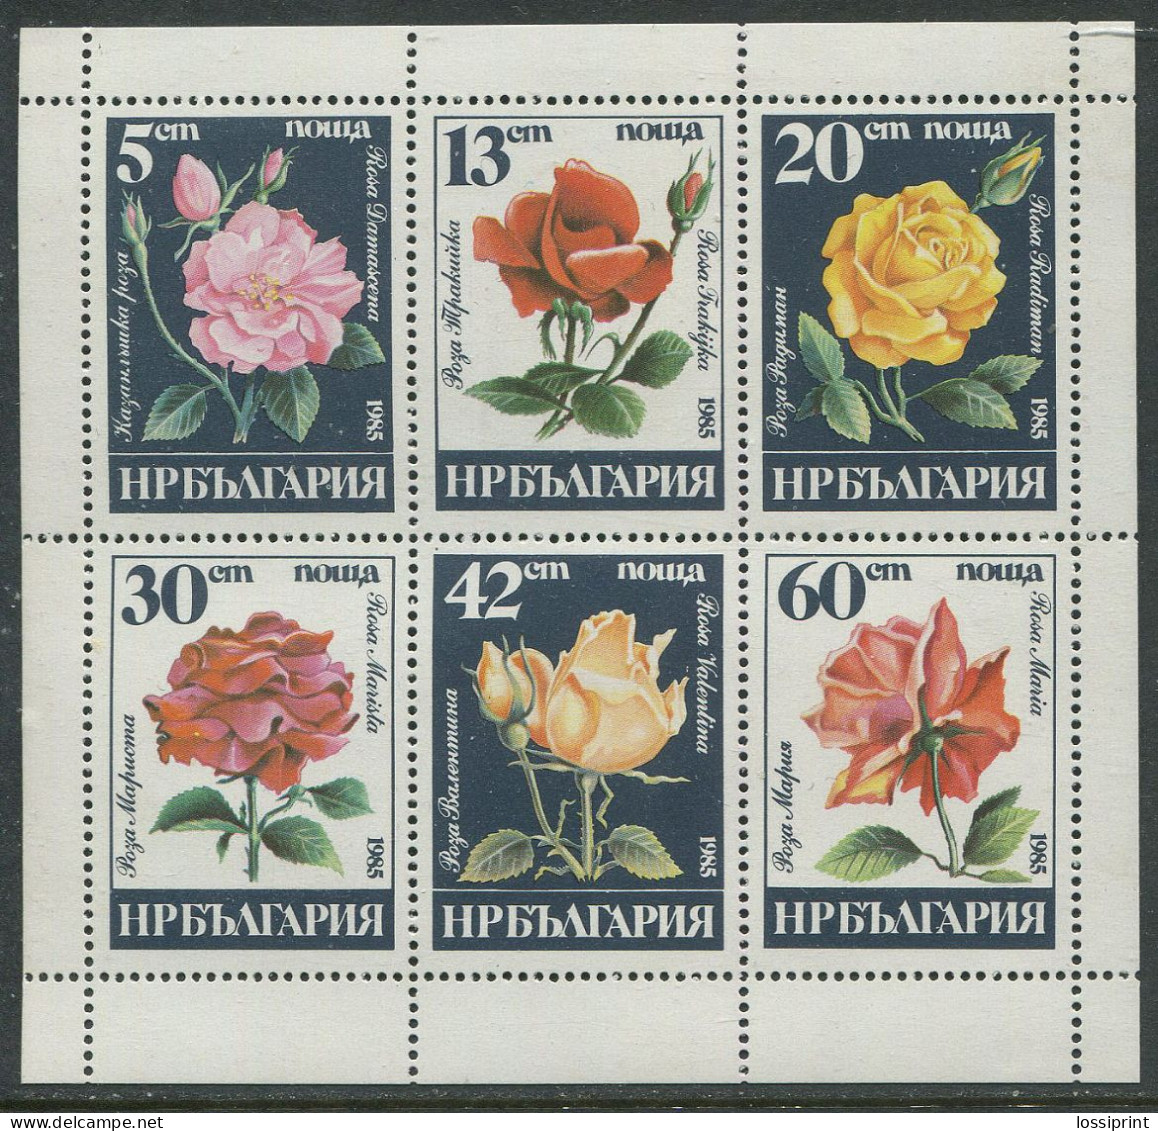 Bulgaria:Unused Block Flowers, Roses, 1985, MNH - Rozen